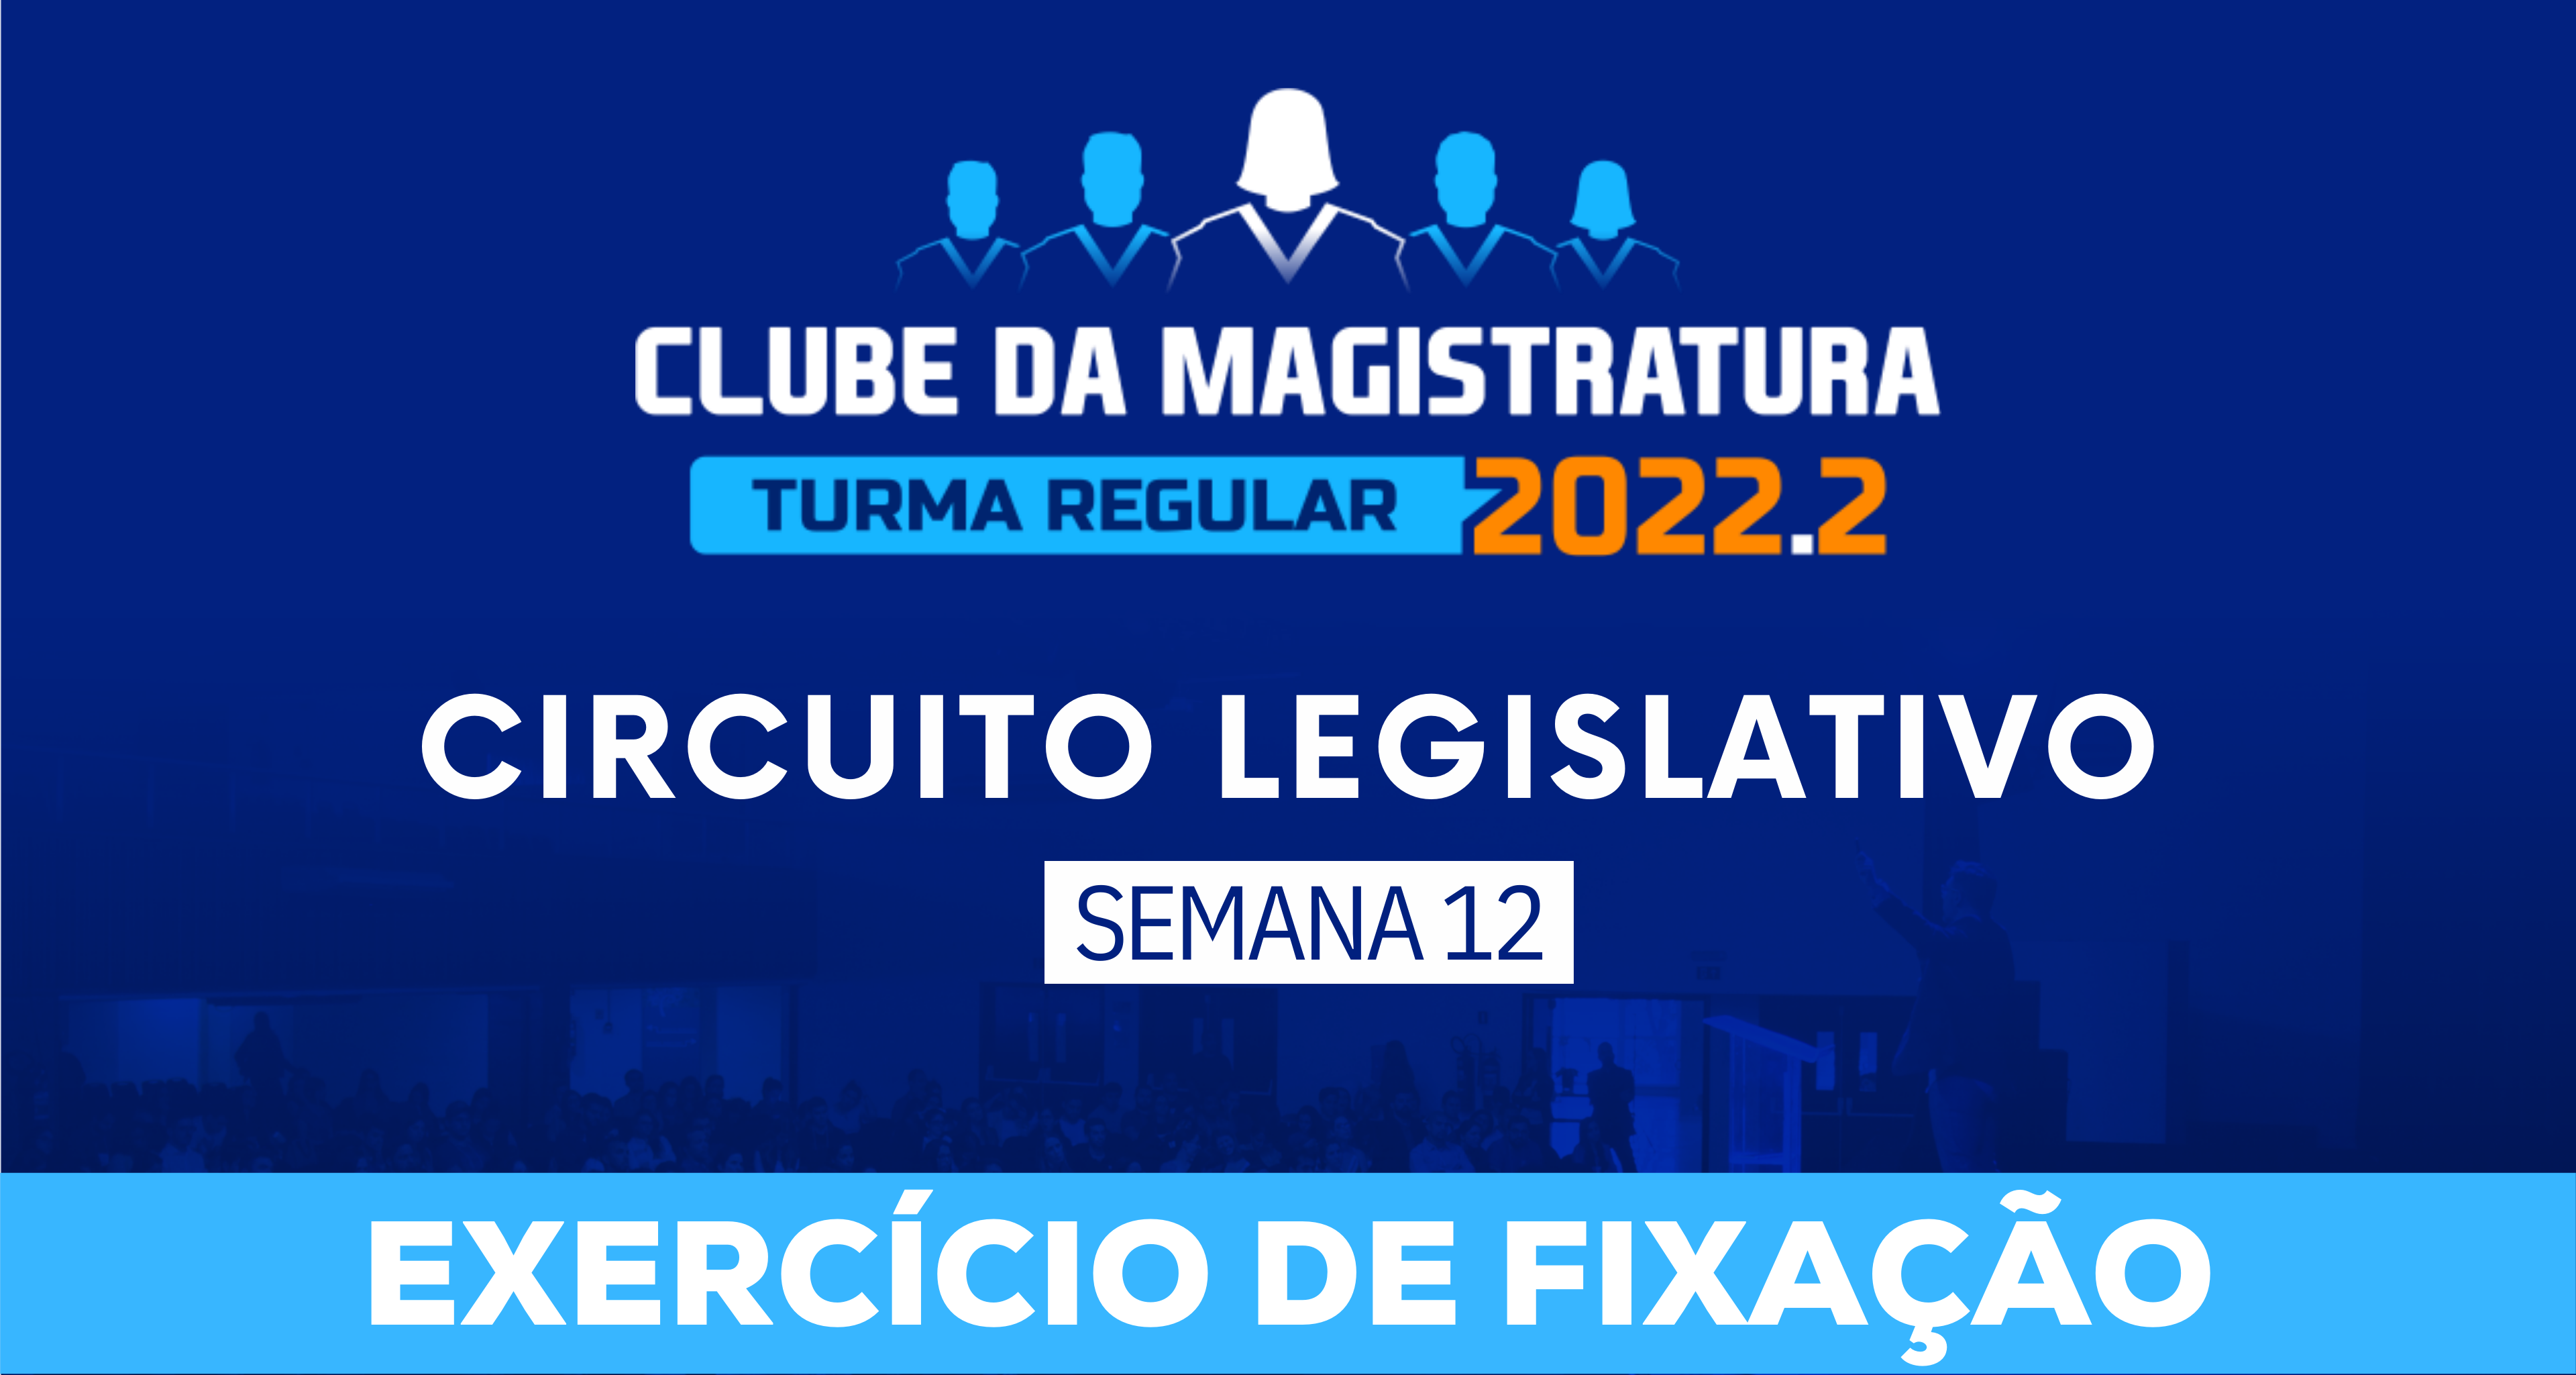 Circuito Legislativo 2022.2 (Clube da Magistratura - Semana 12)